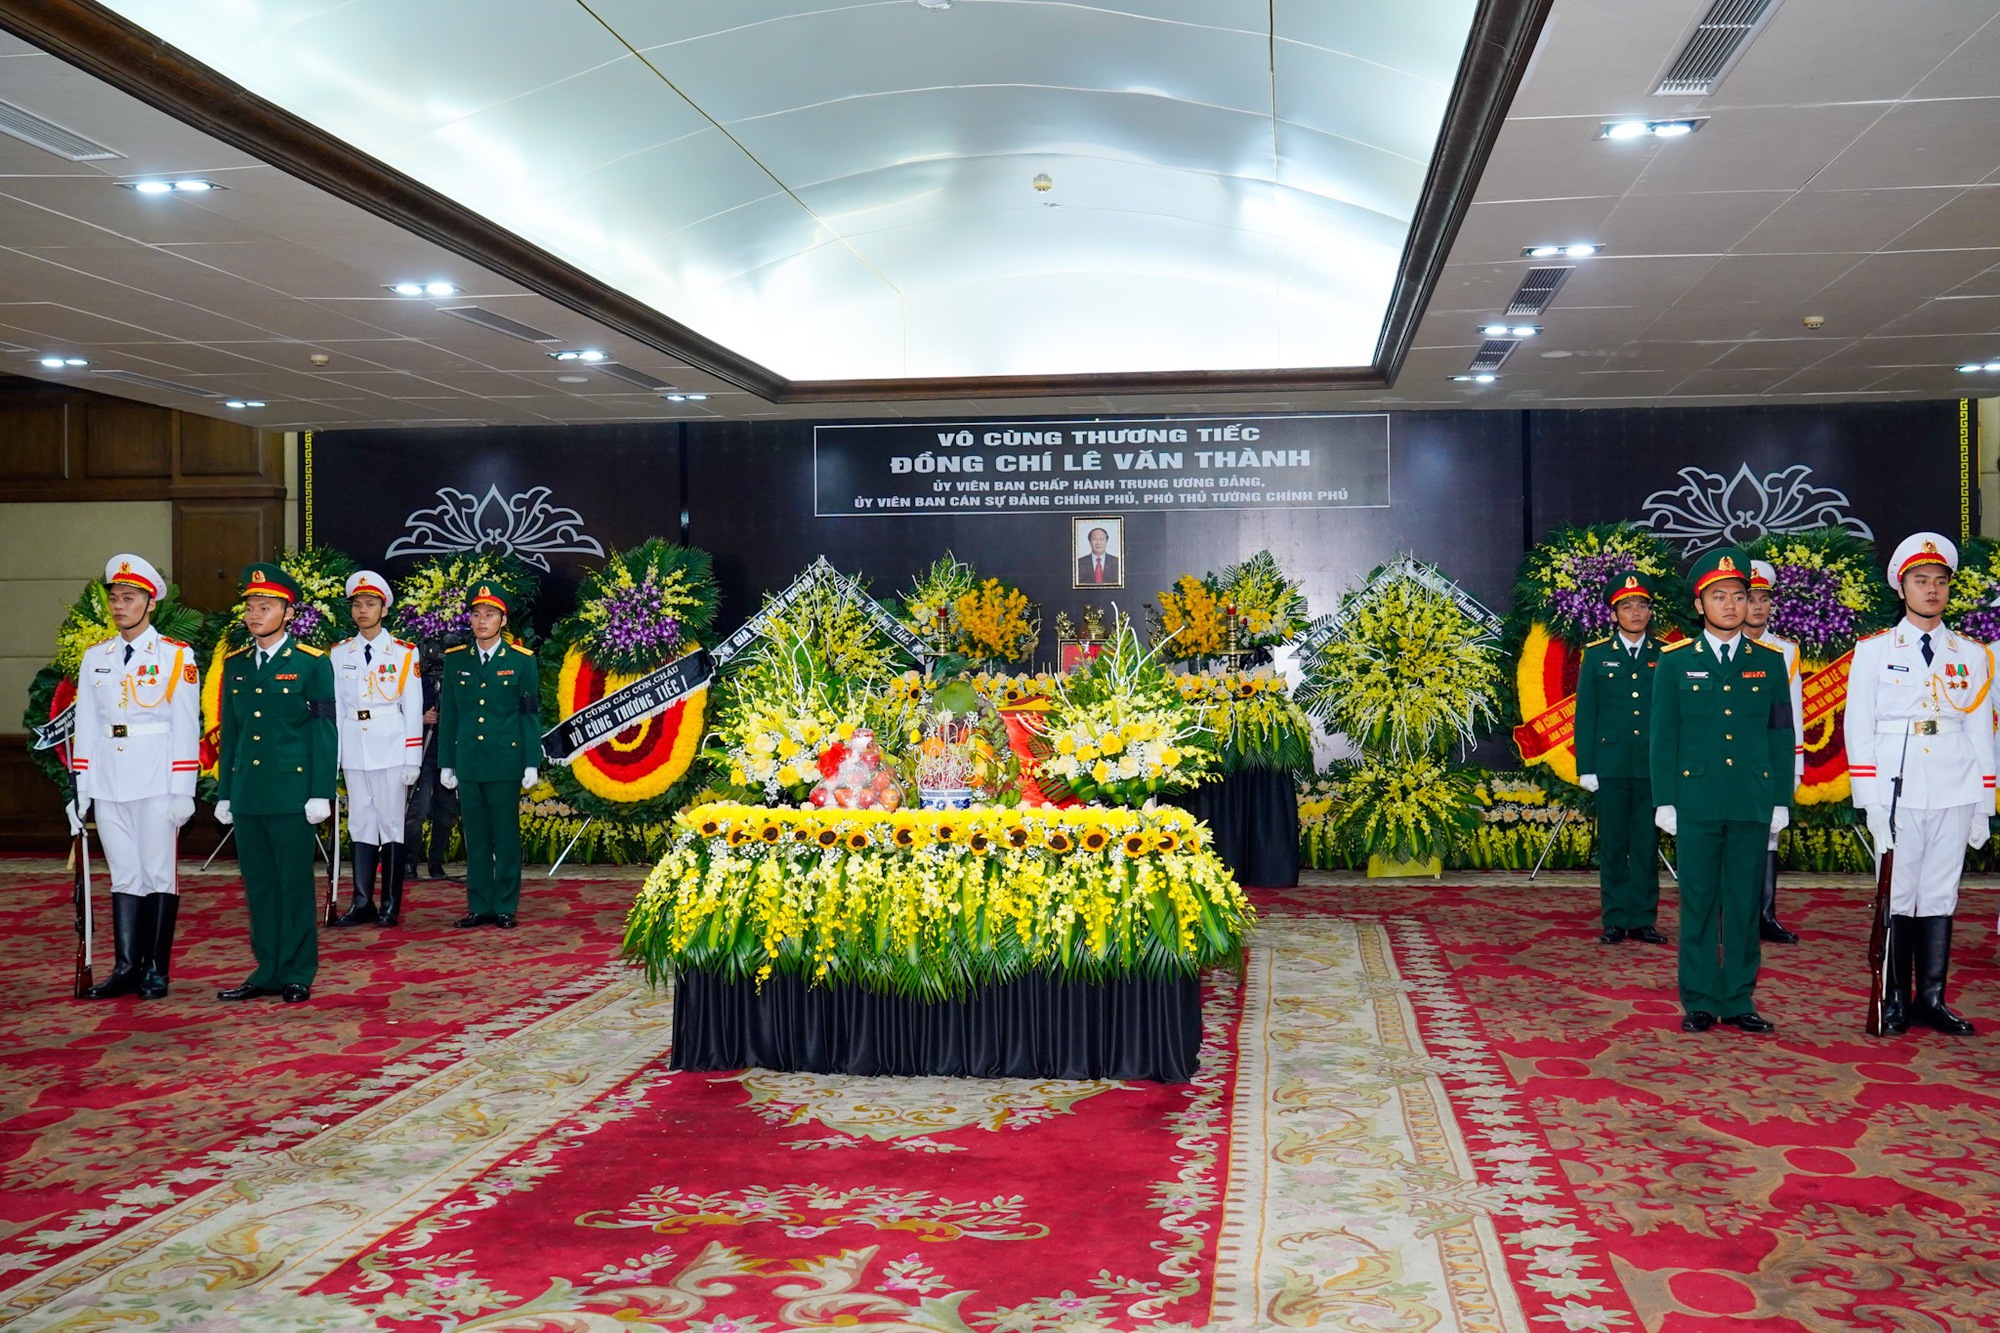 Xúc động lời tiễn biệt của đoàn Lãnh đạo Đảng, Nhà nước dành cho Phó Thủ tướng Lê Văn Thành  - Ảnh 1.